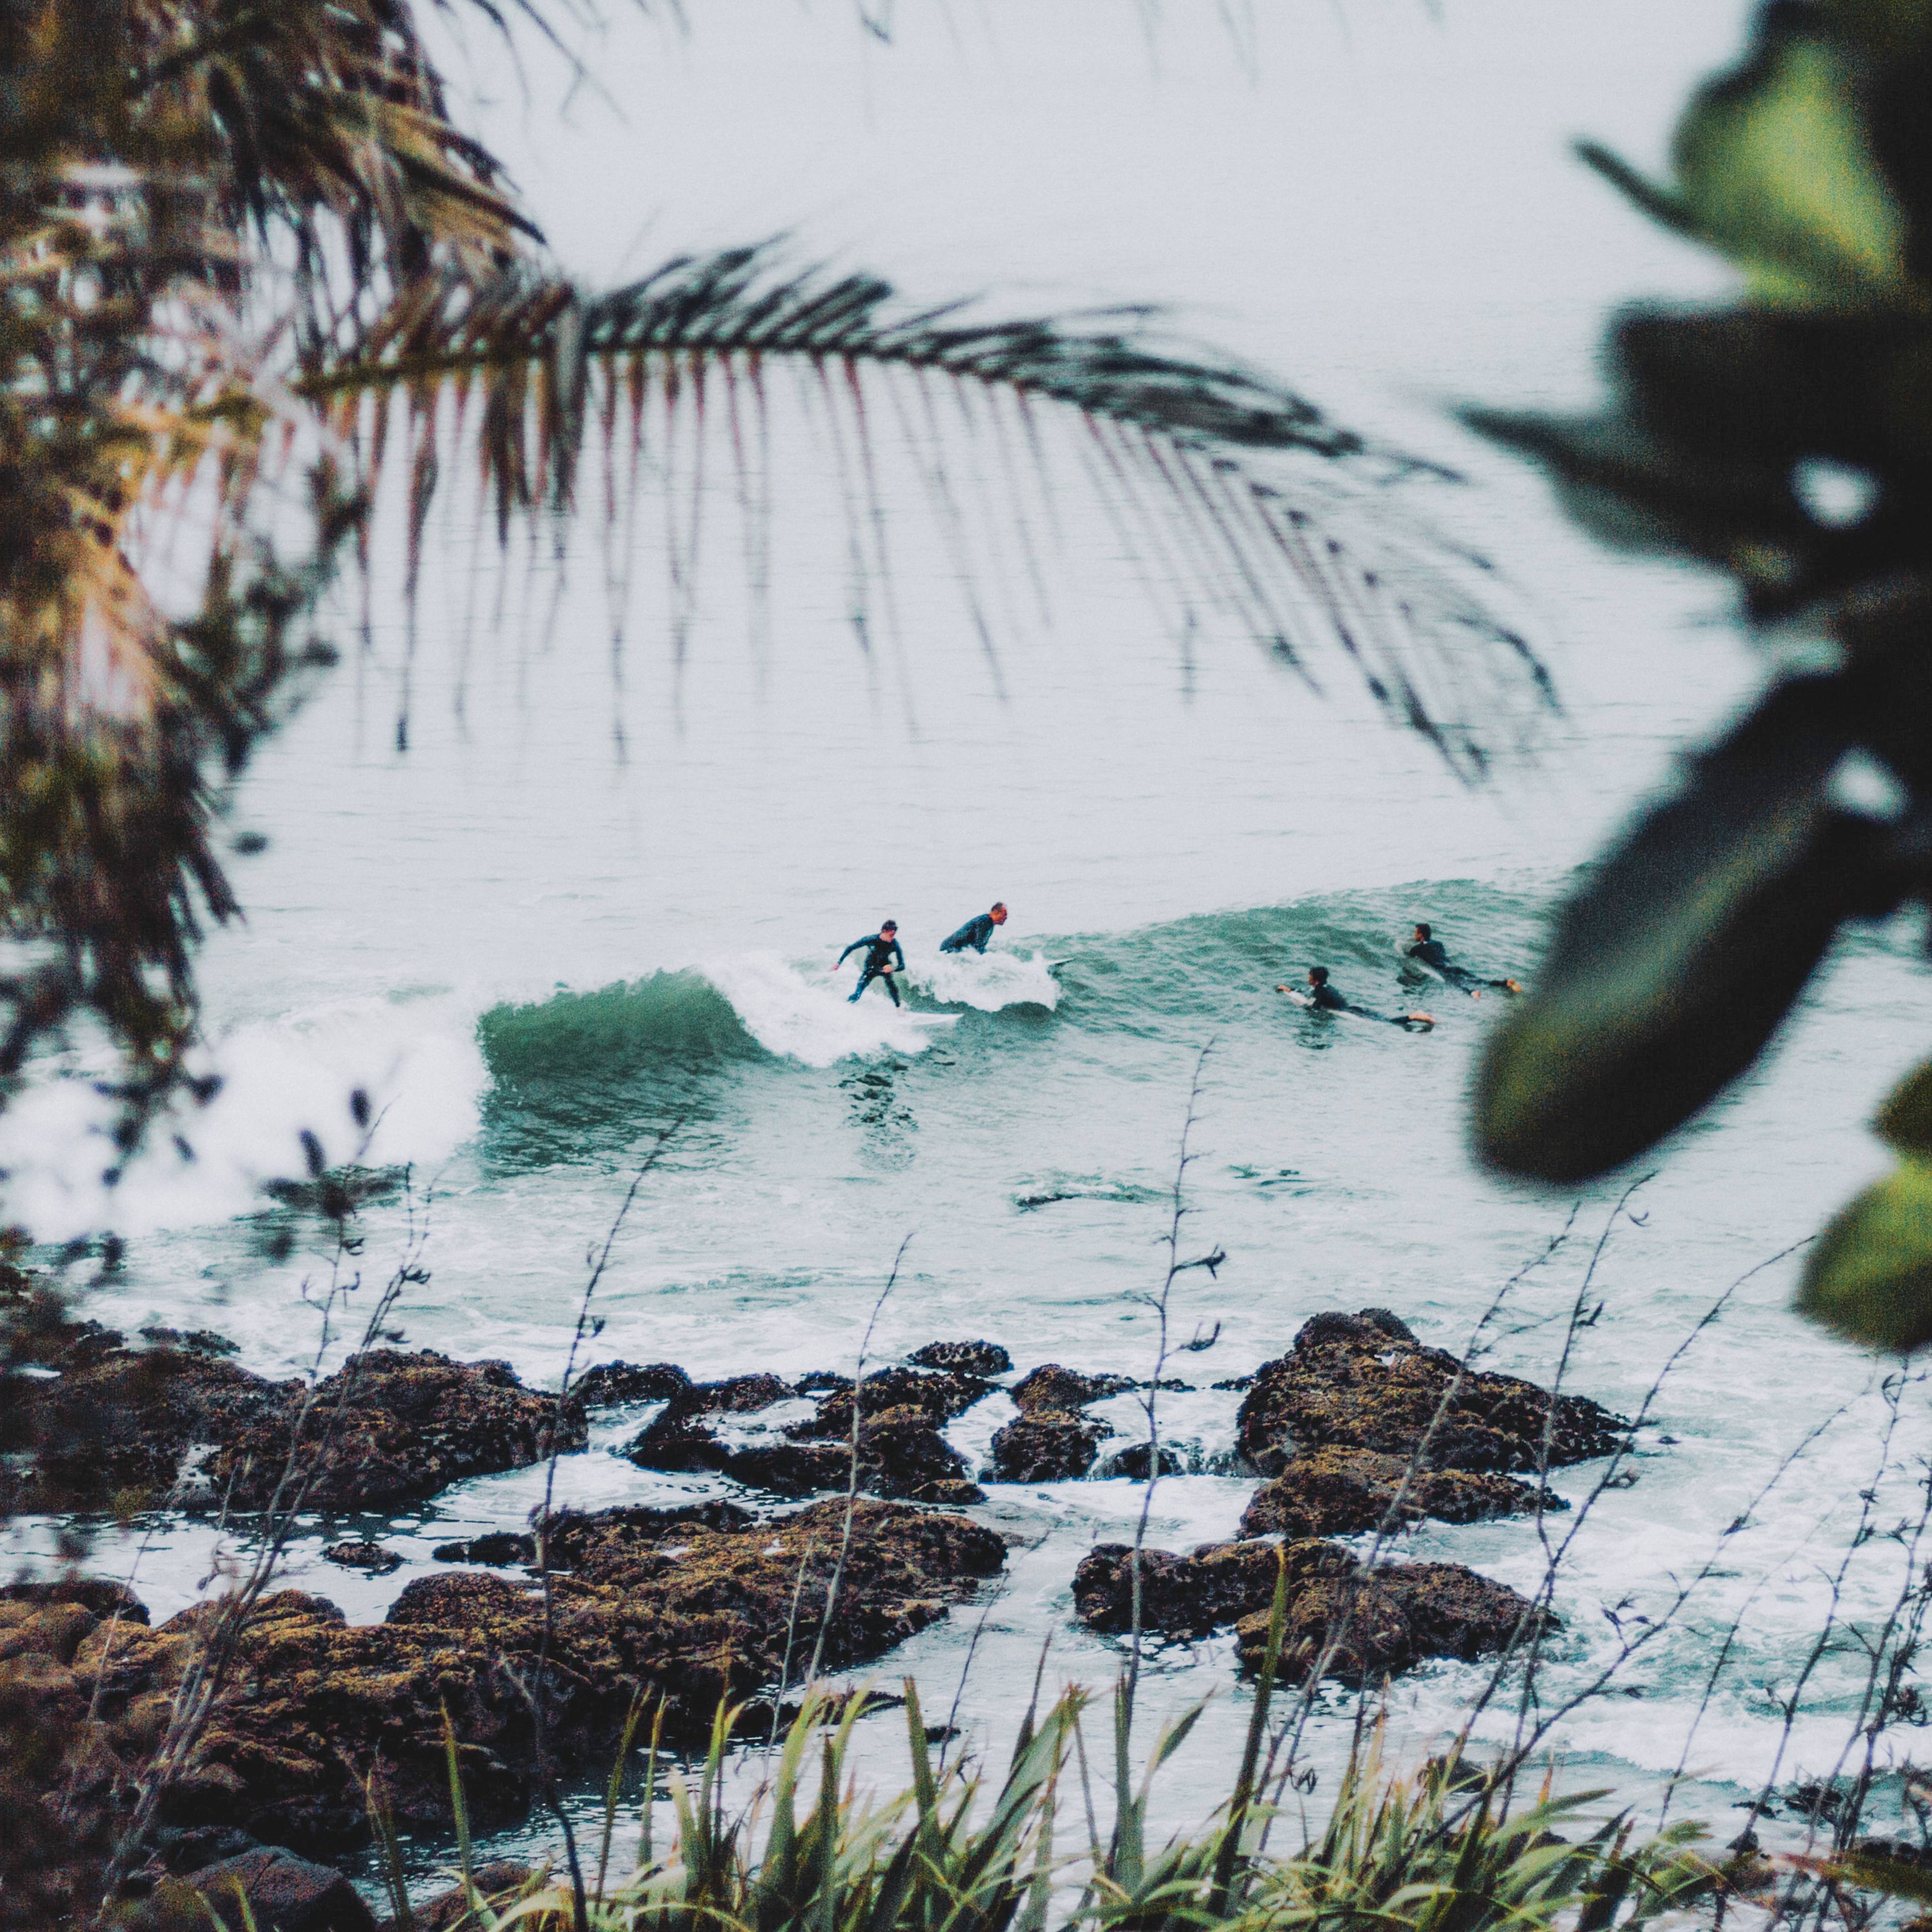 Australische Surfer durch die Vegetation gesehen